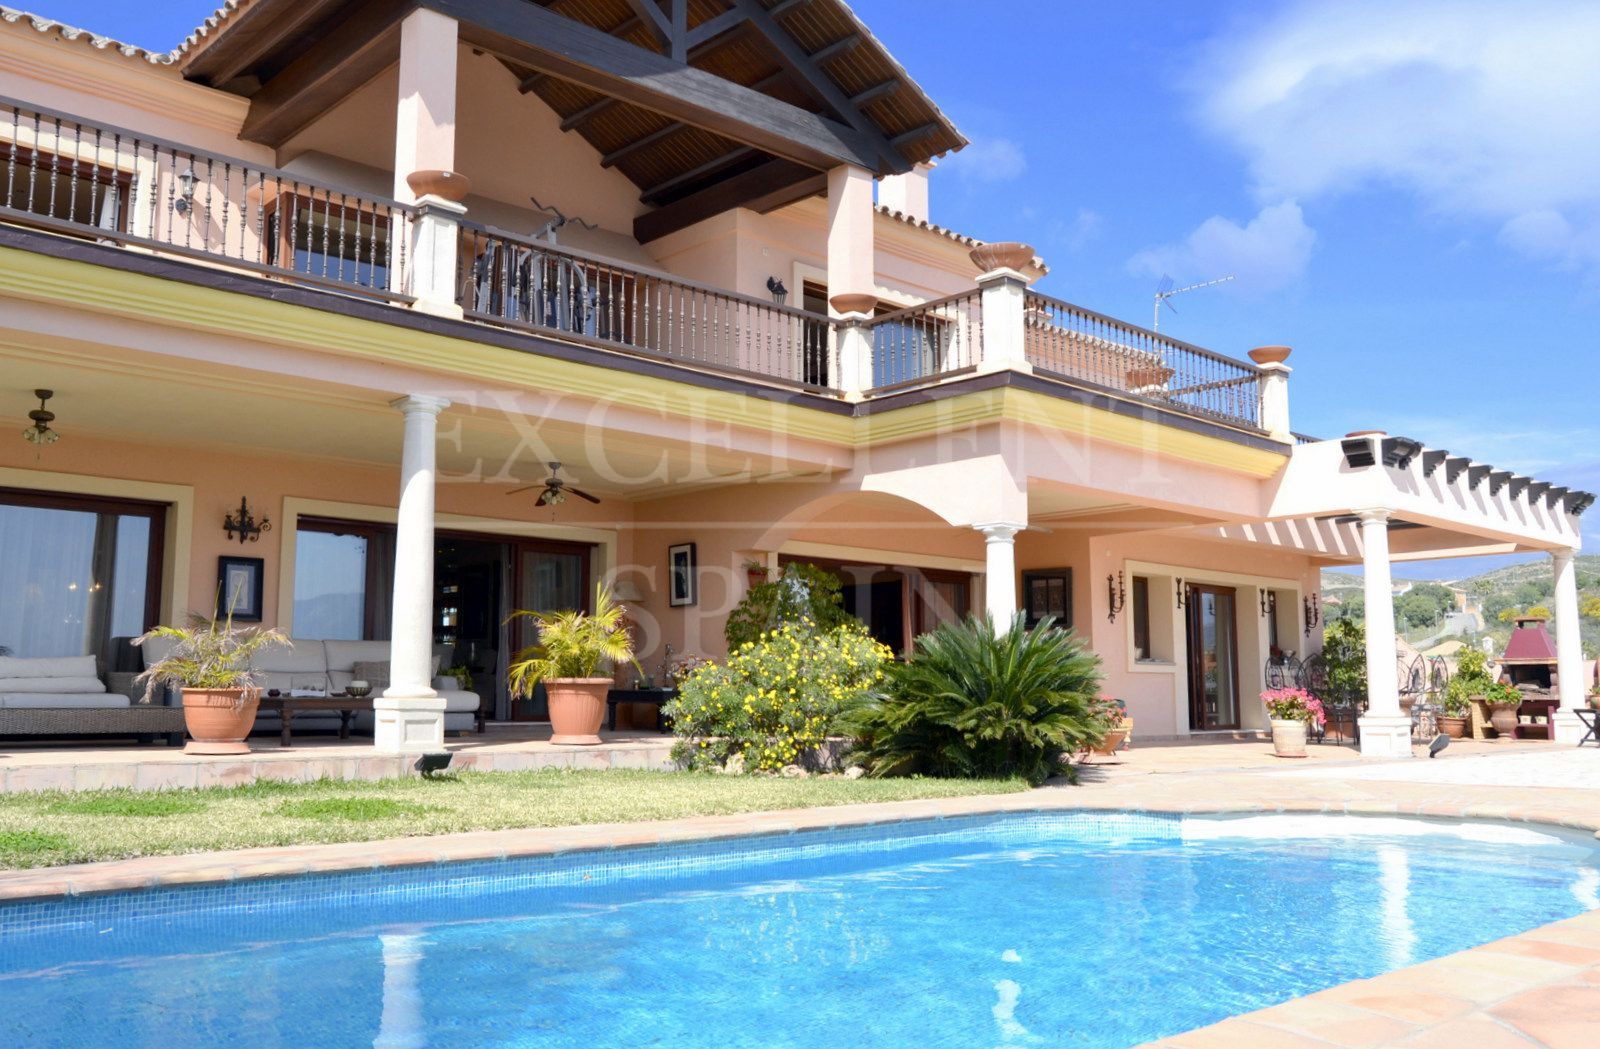 La Alquería, Benahavis, Costa del Sol, fabulosa villa a la venta